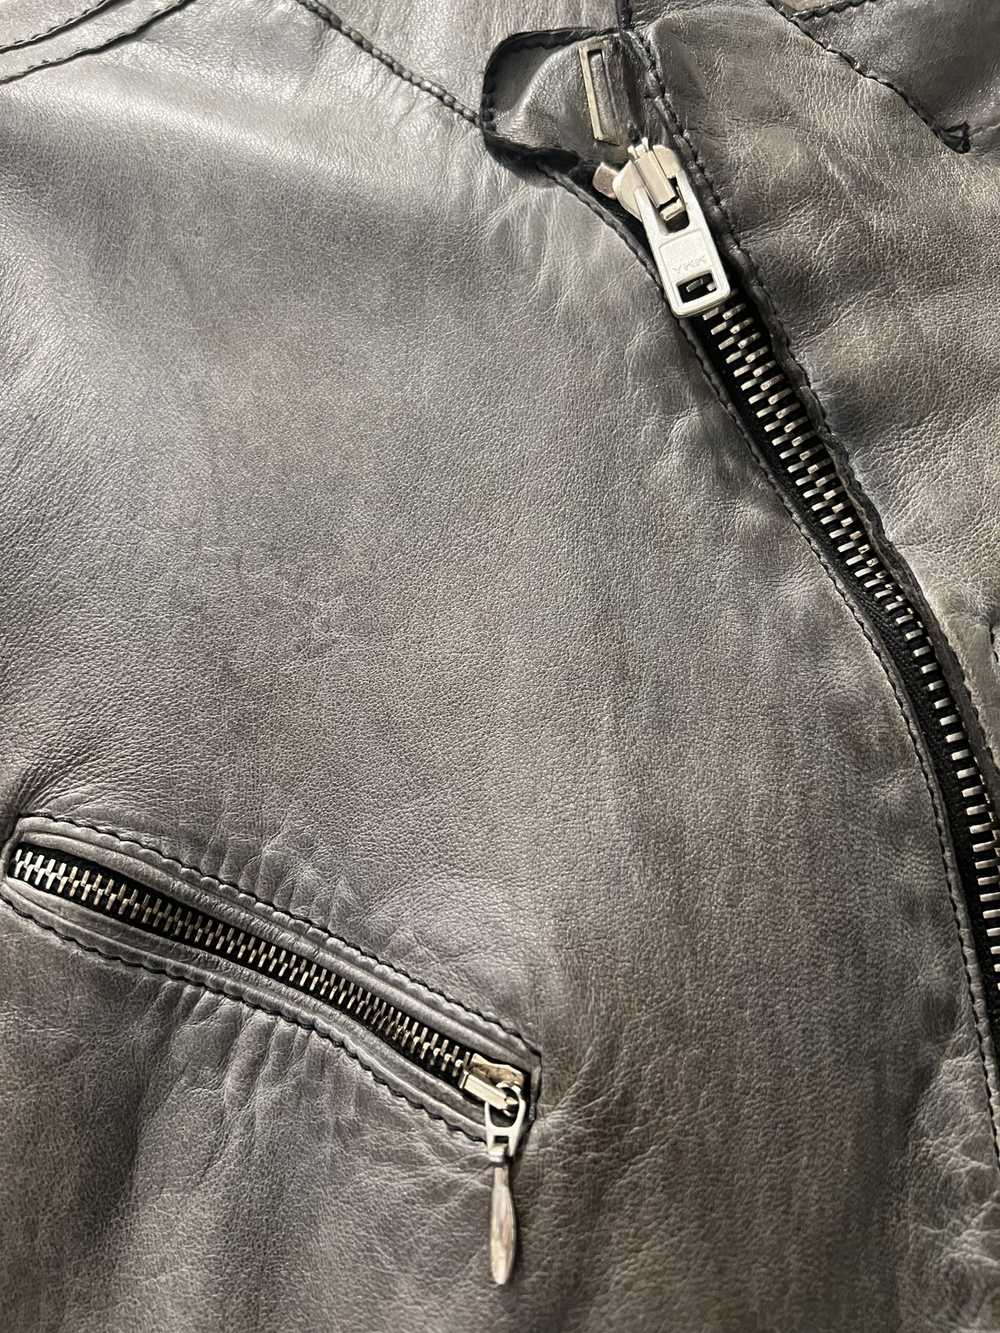 Un Solomondo Un solo mondo Leather jacket - image 2